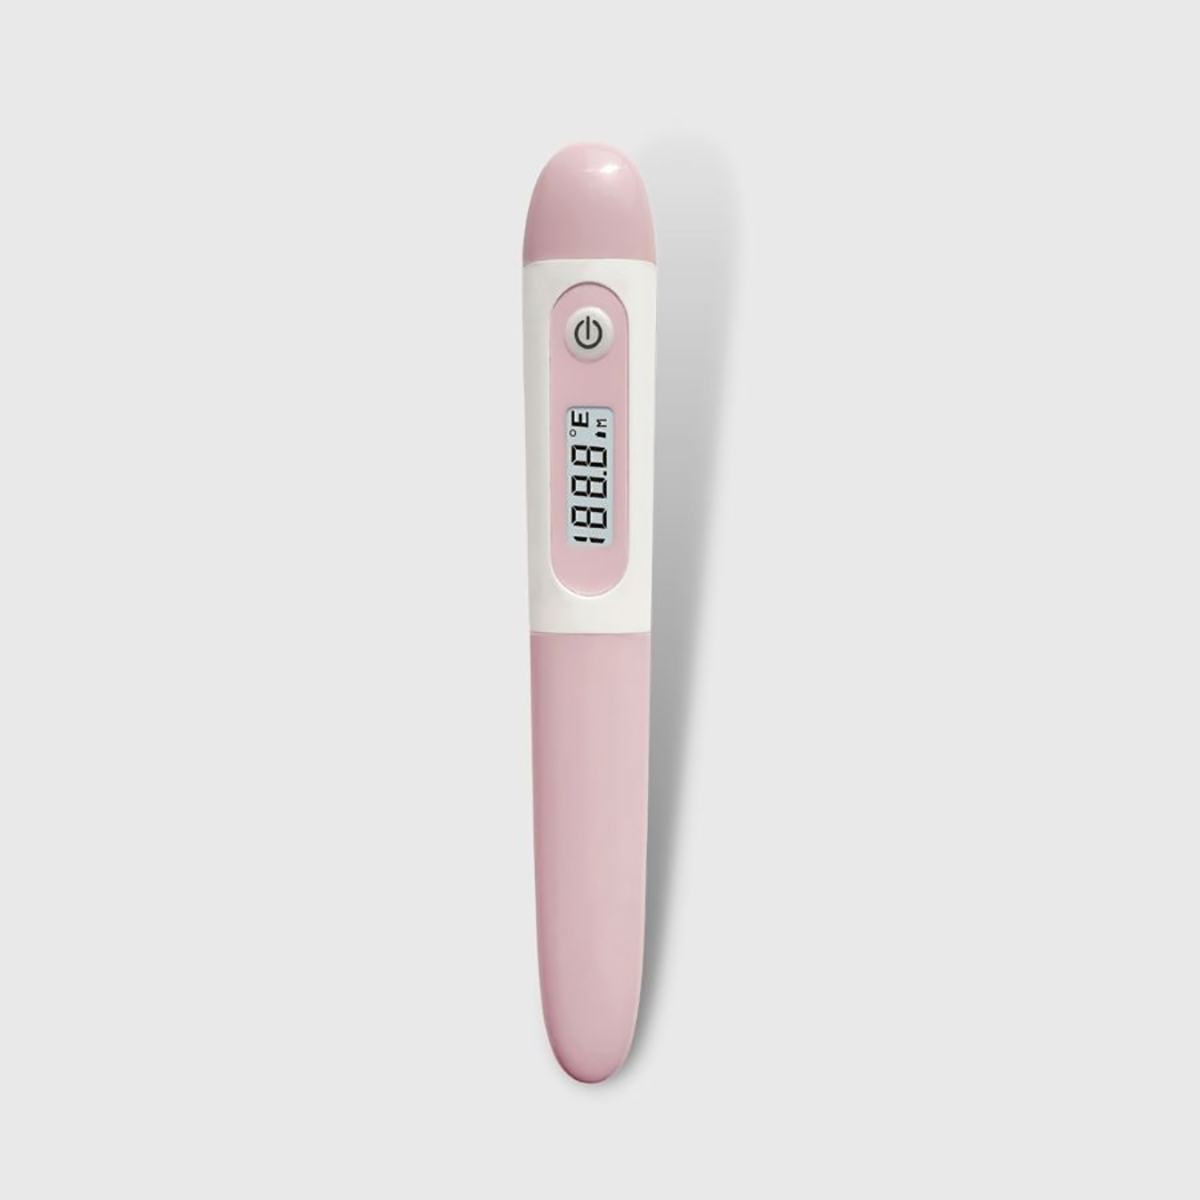 CE MDR Dewasa Klinis Underarm Digital Kaku Thermometer Portabel pikeun Kaperawatan